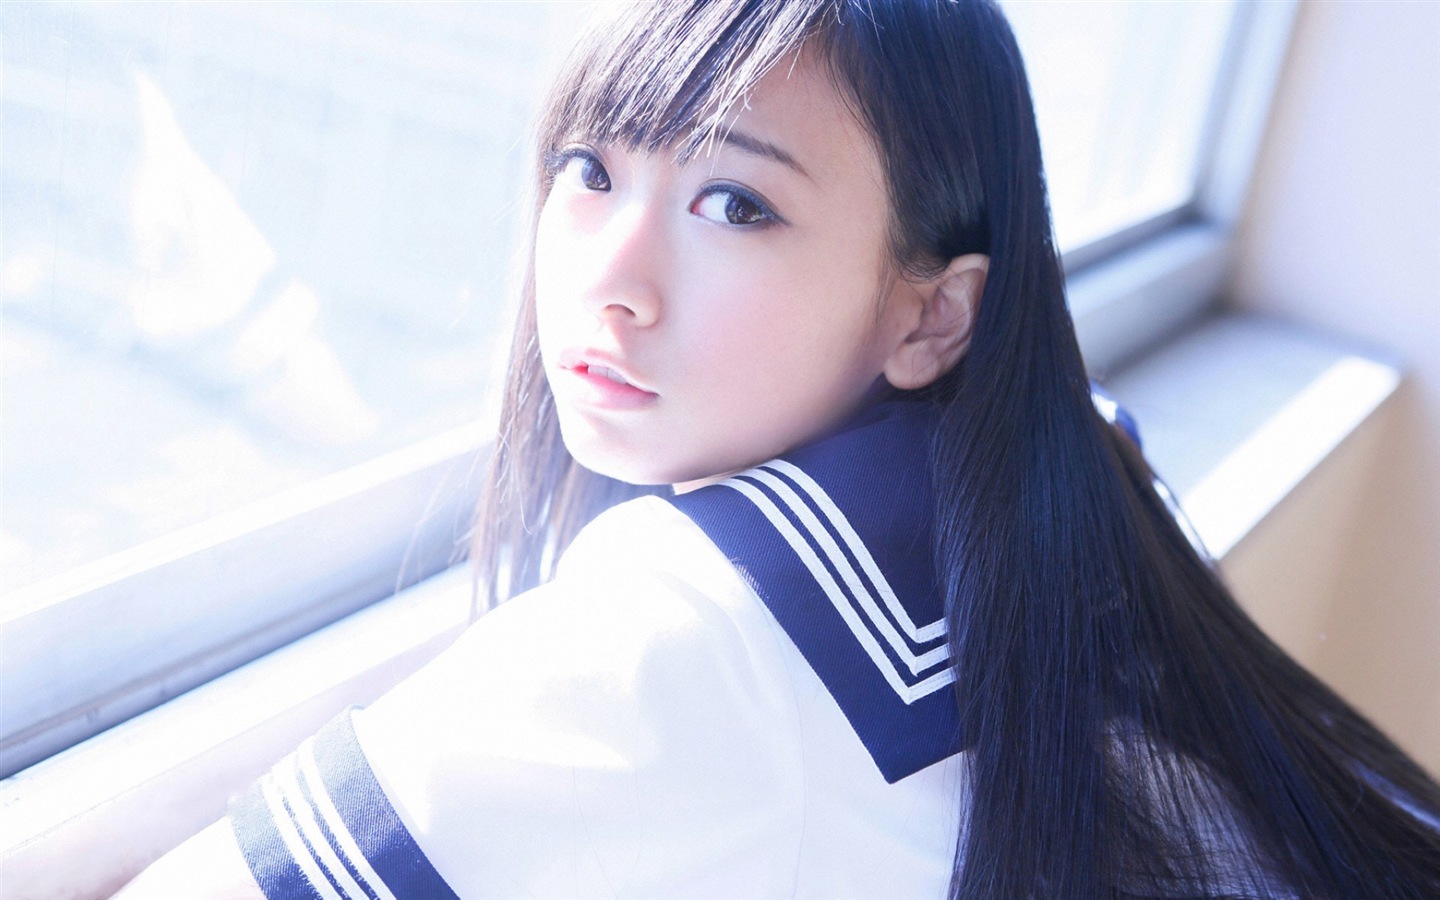 Japanese teen girl HD Wallpaper #6 - 1440x900